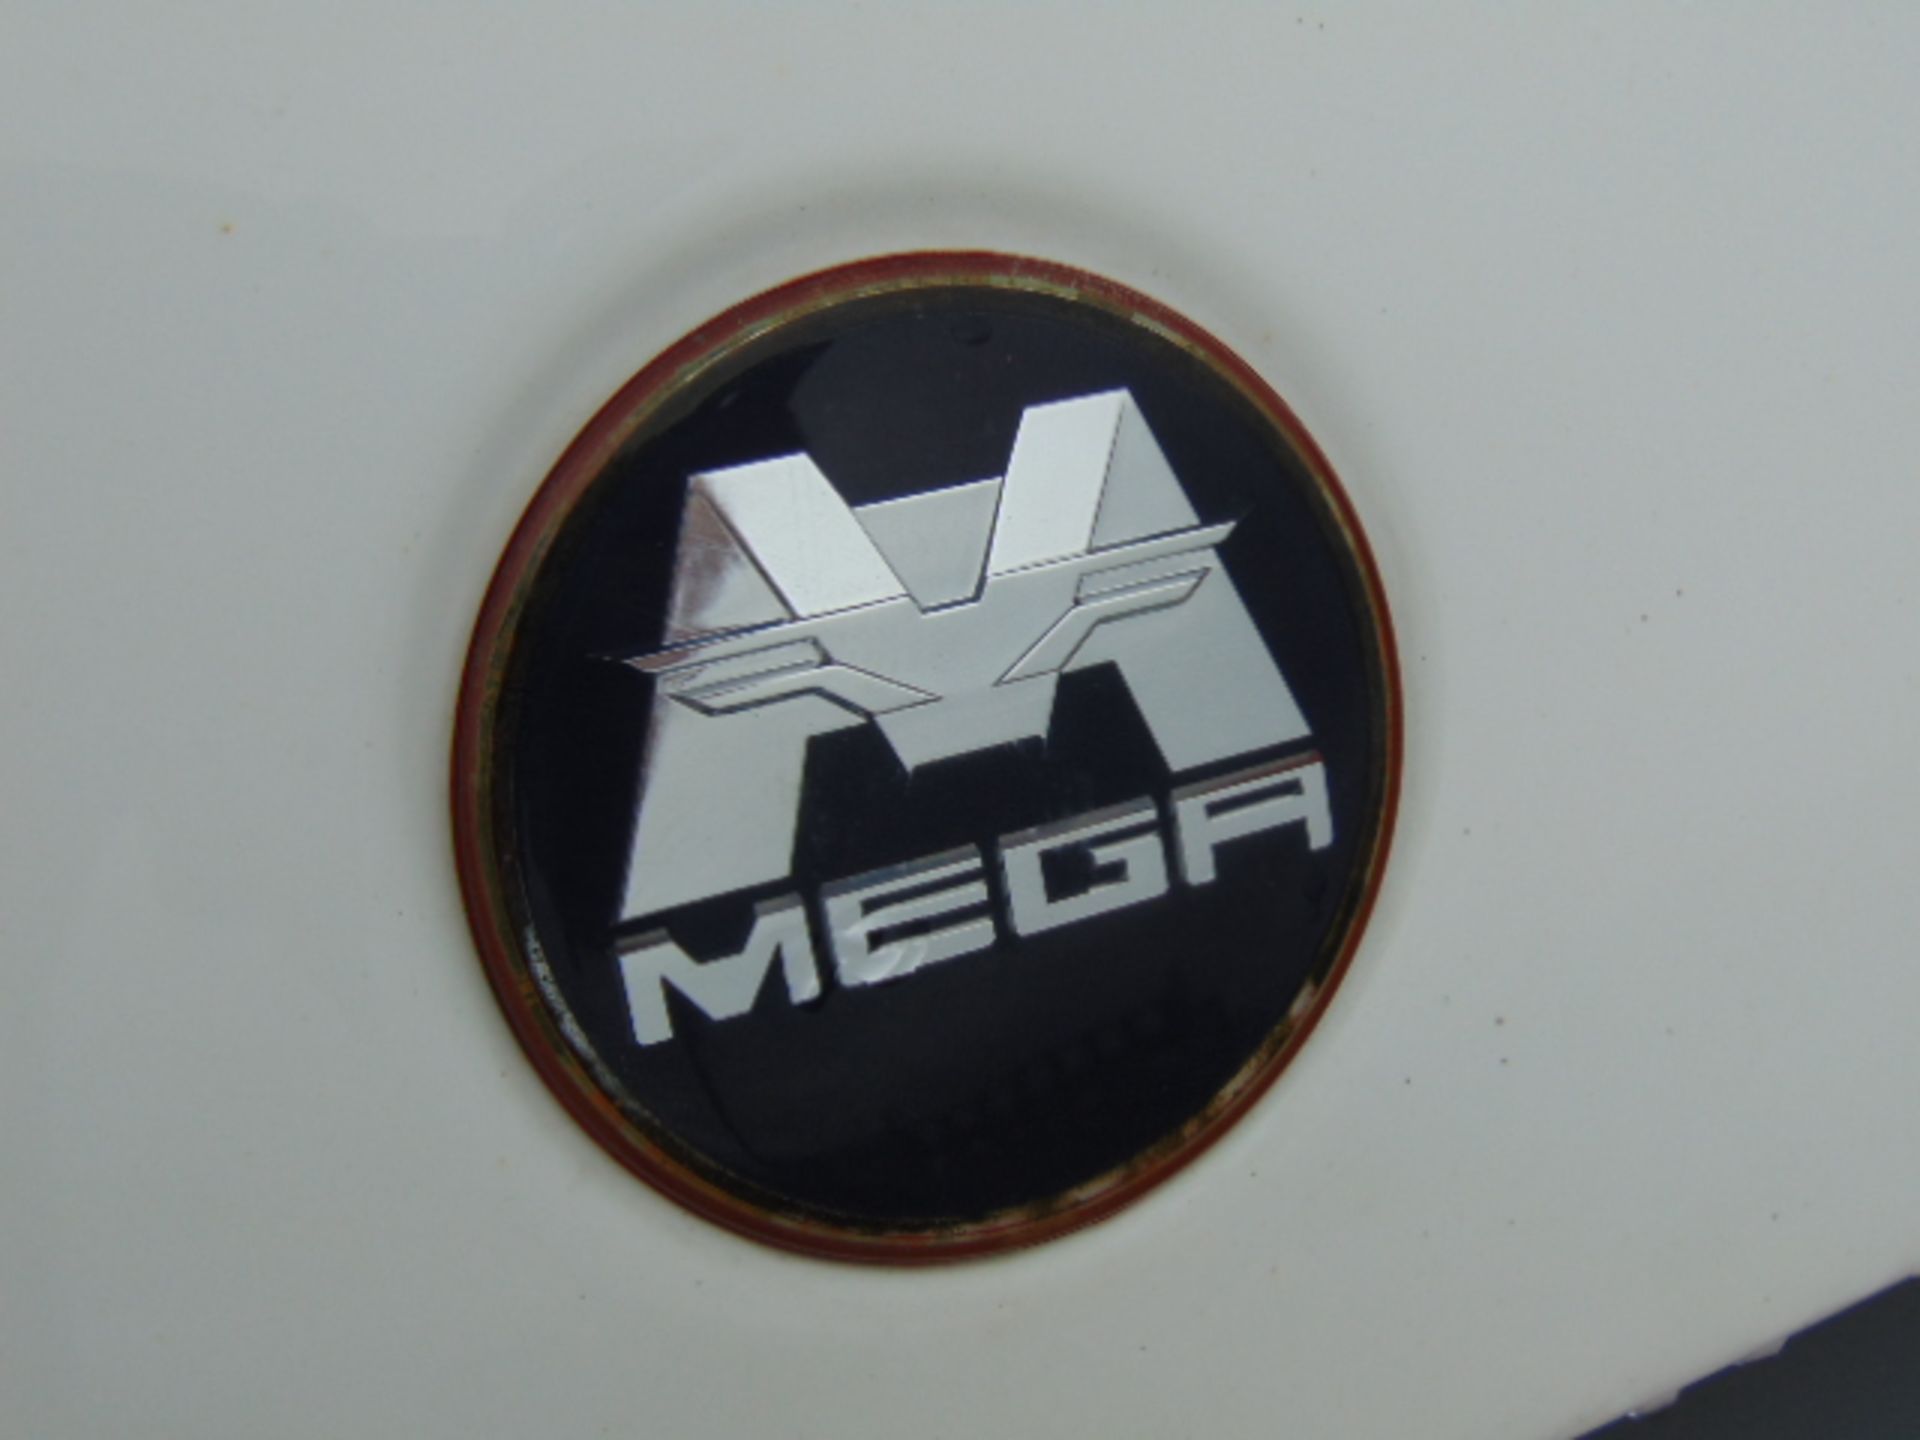 2011 Aixam Mega Electric City Van - Image 17 of 19